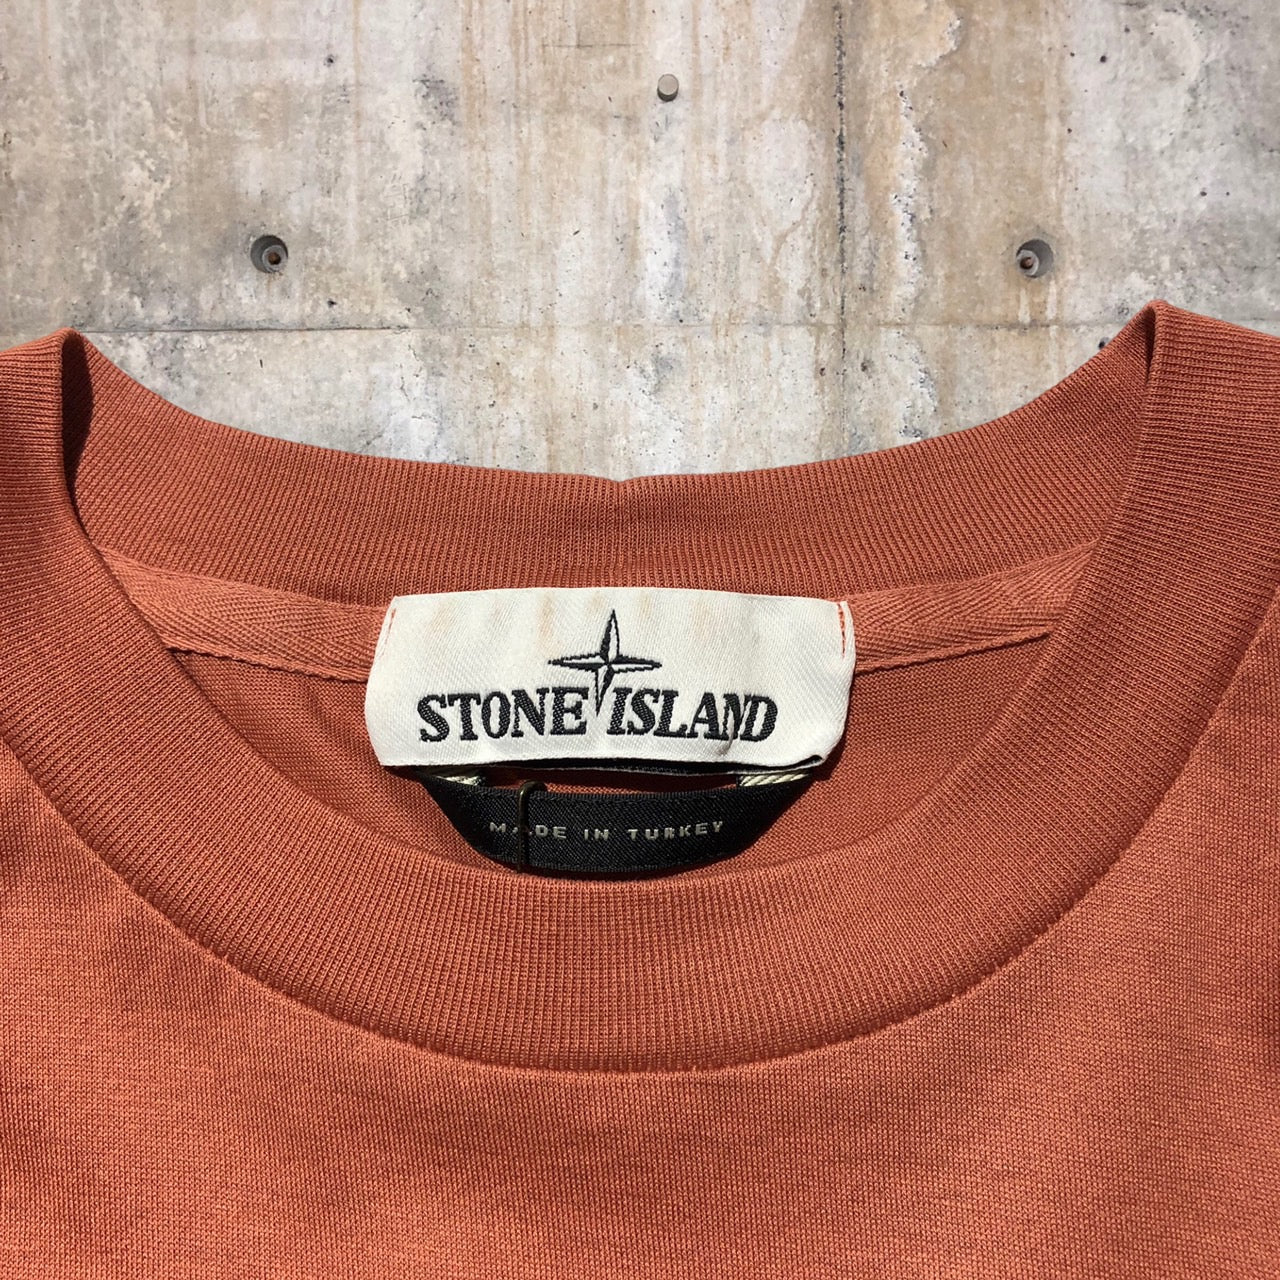 STONE ISLAND(ストーンアイランド) ロゴTシャツ M ピンク